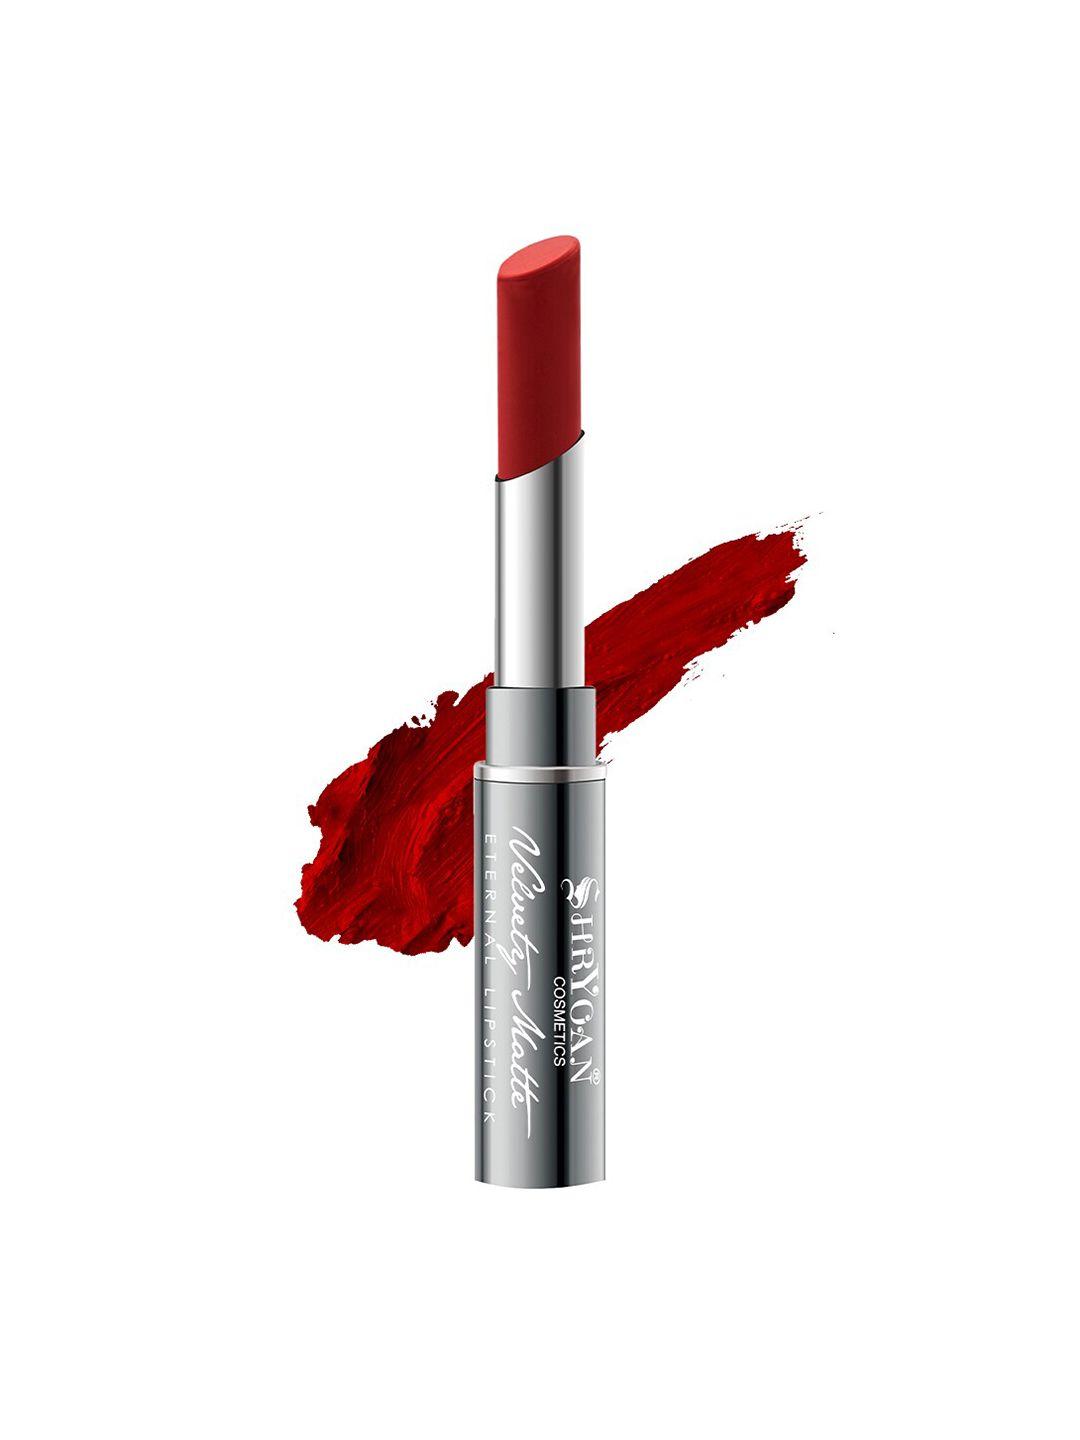 shryoan velvety matte non-transfer eternal lipstick - sheer red